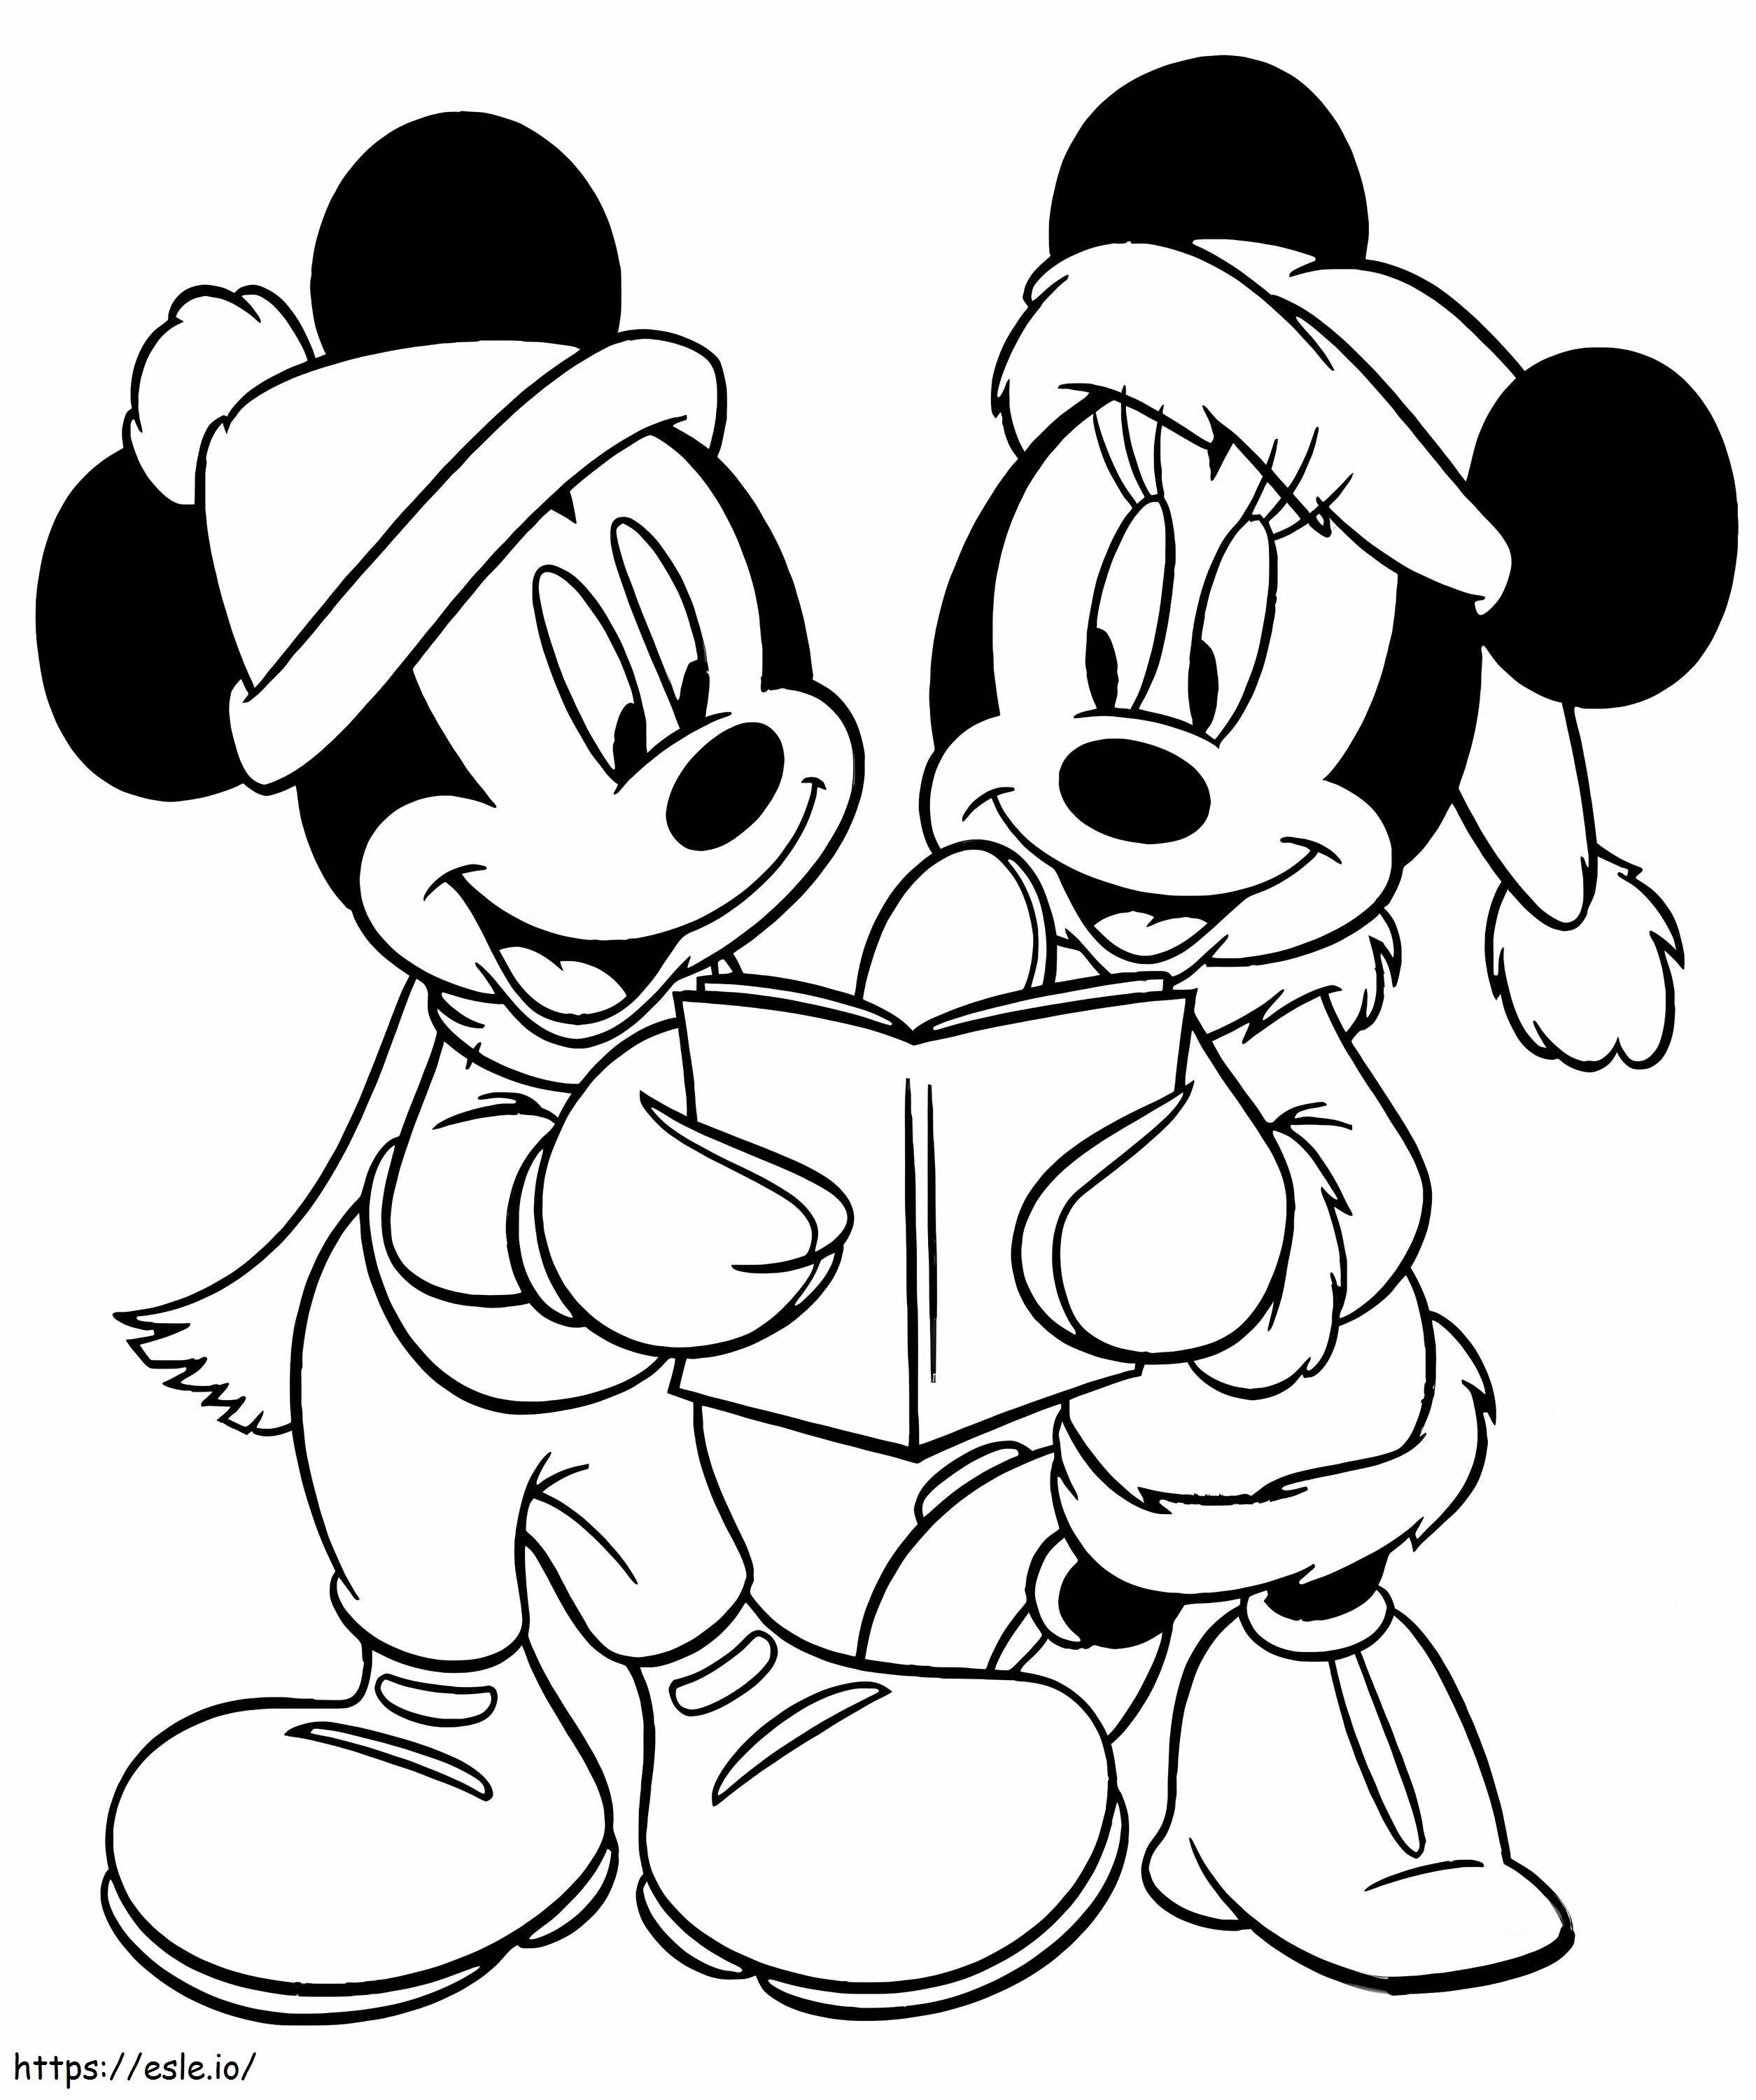 Mickey și Minnie de Crăciun de colorat